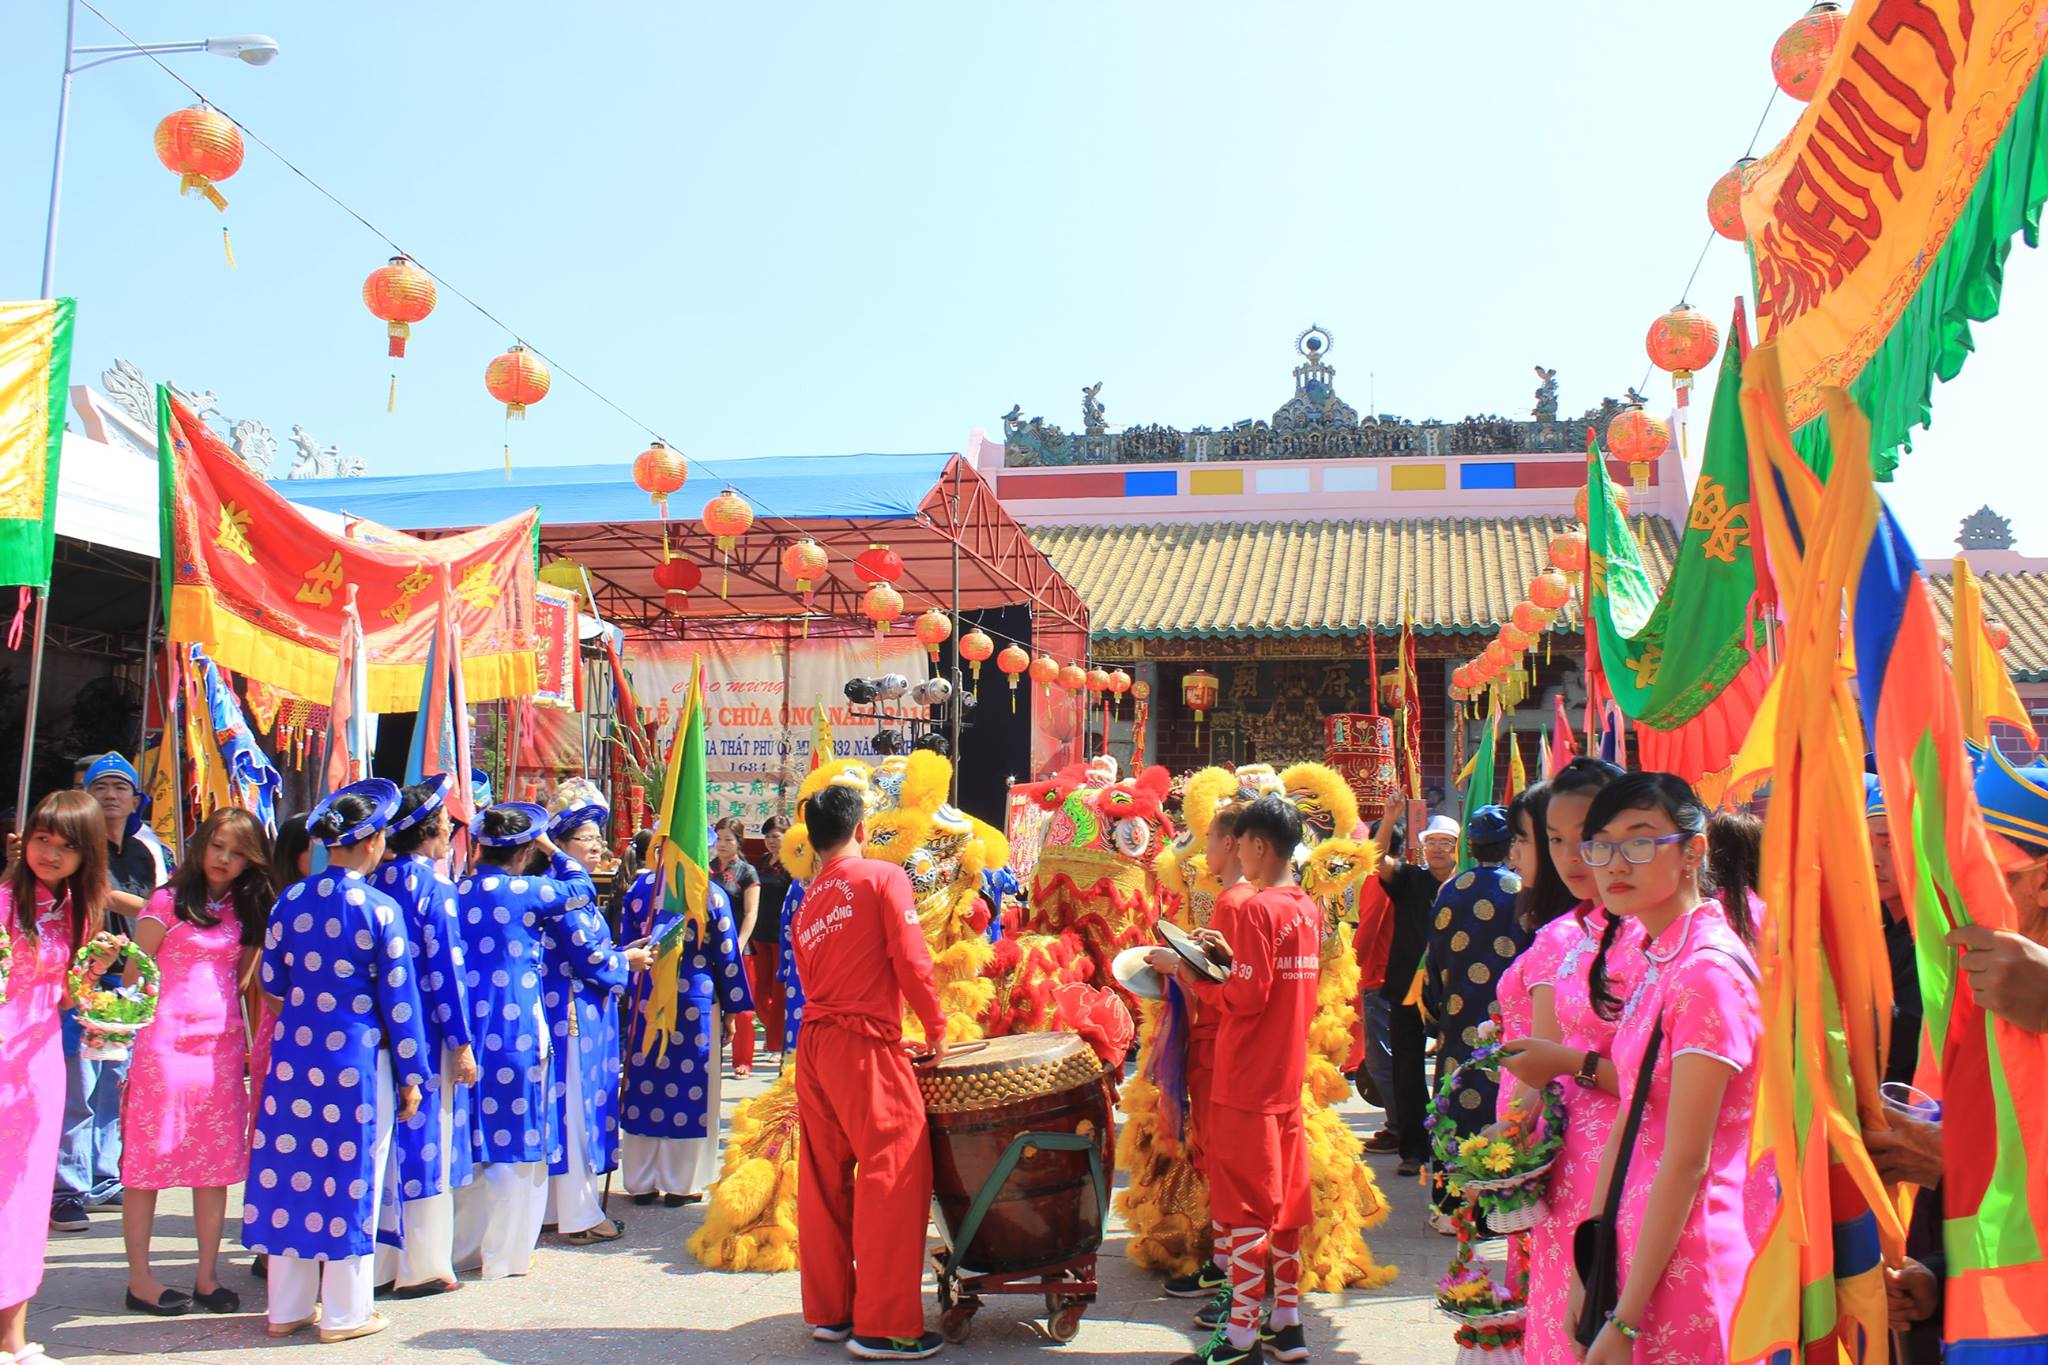 Lễ hội Kỳ yên được tổ chức trang trọng hàng năm, mang đậm bản sắc văn hóa